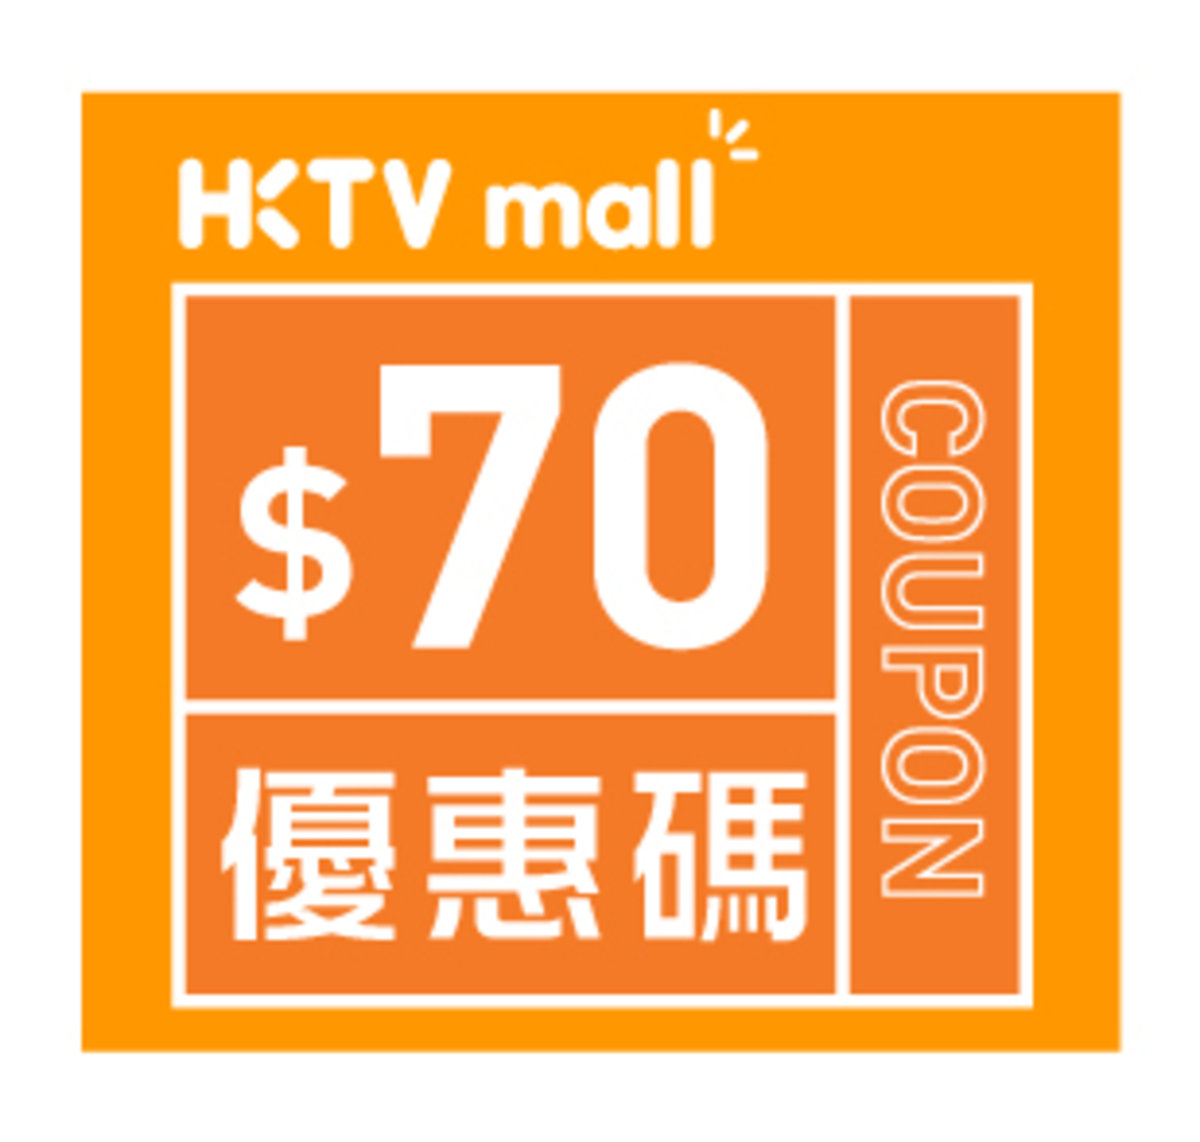 HKTVmall $70購物優惠碼 [有效日期： 2020.08.03 - 2020.09.15]